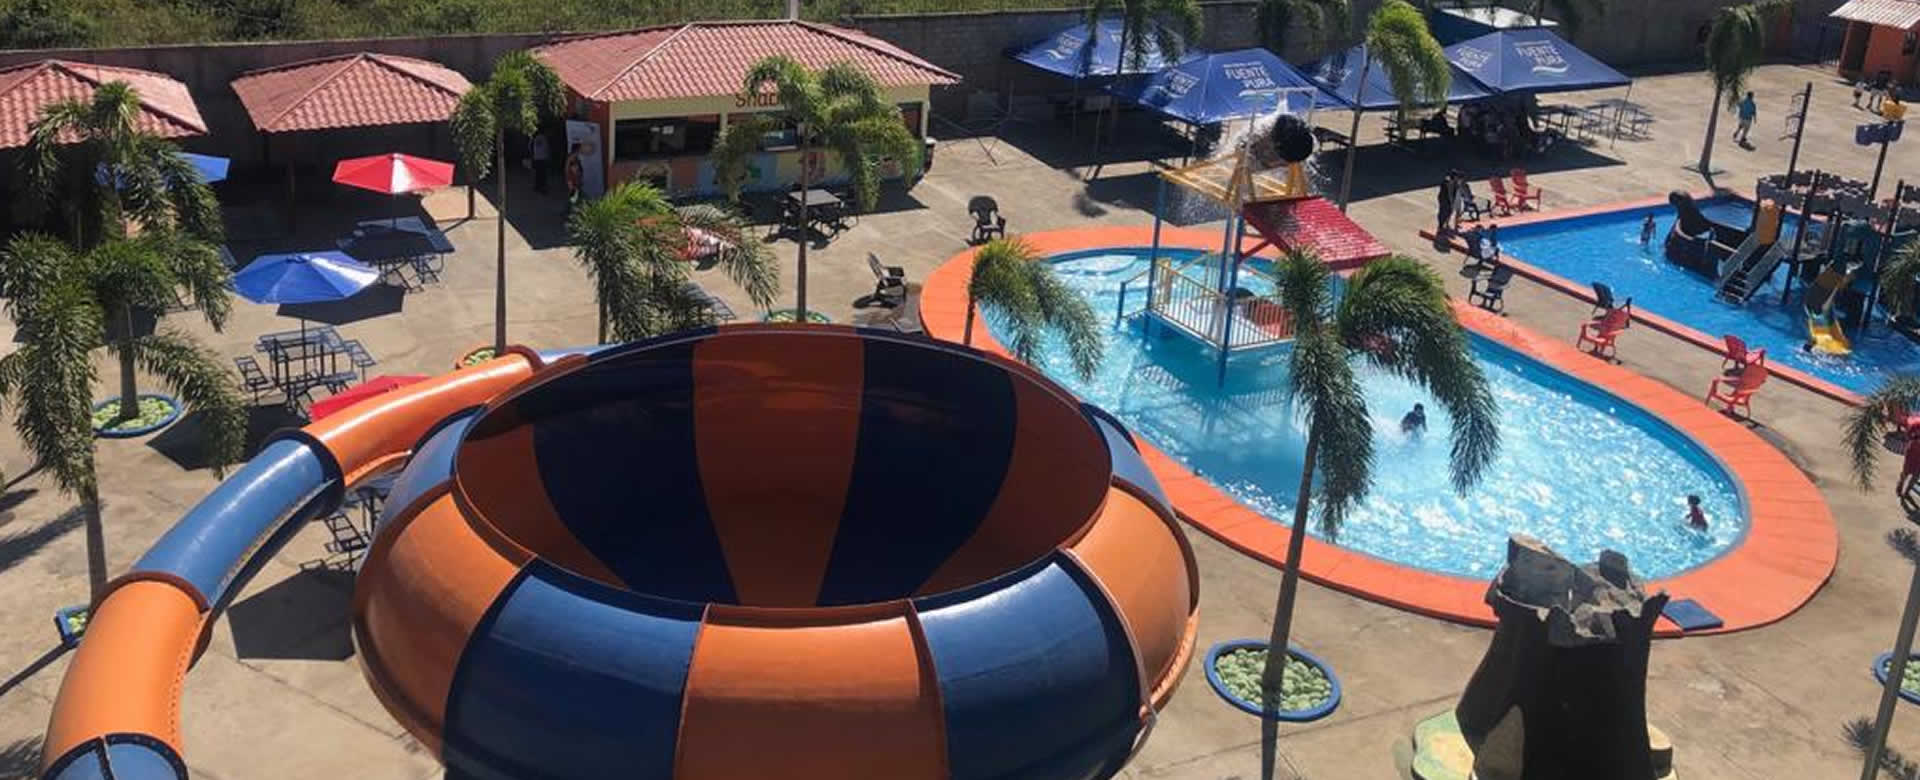 ya abrió sus puertas el nuevo centro turístico "Luna Aqua Park" del Ex Grandes Liga, Wilton López